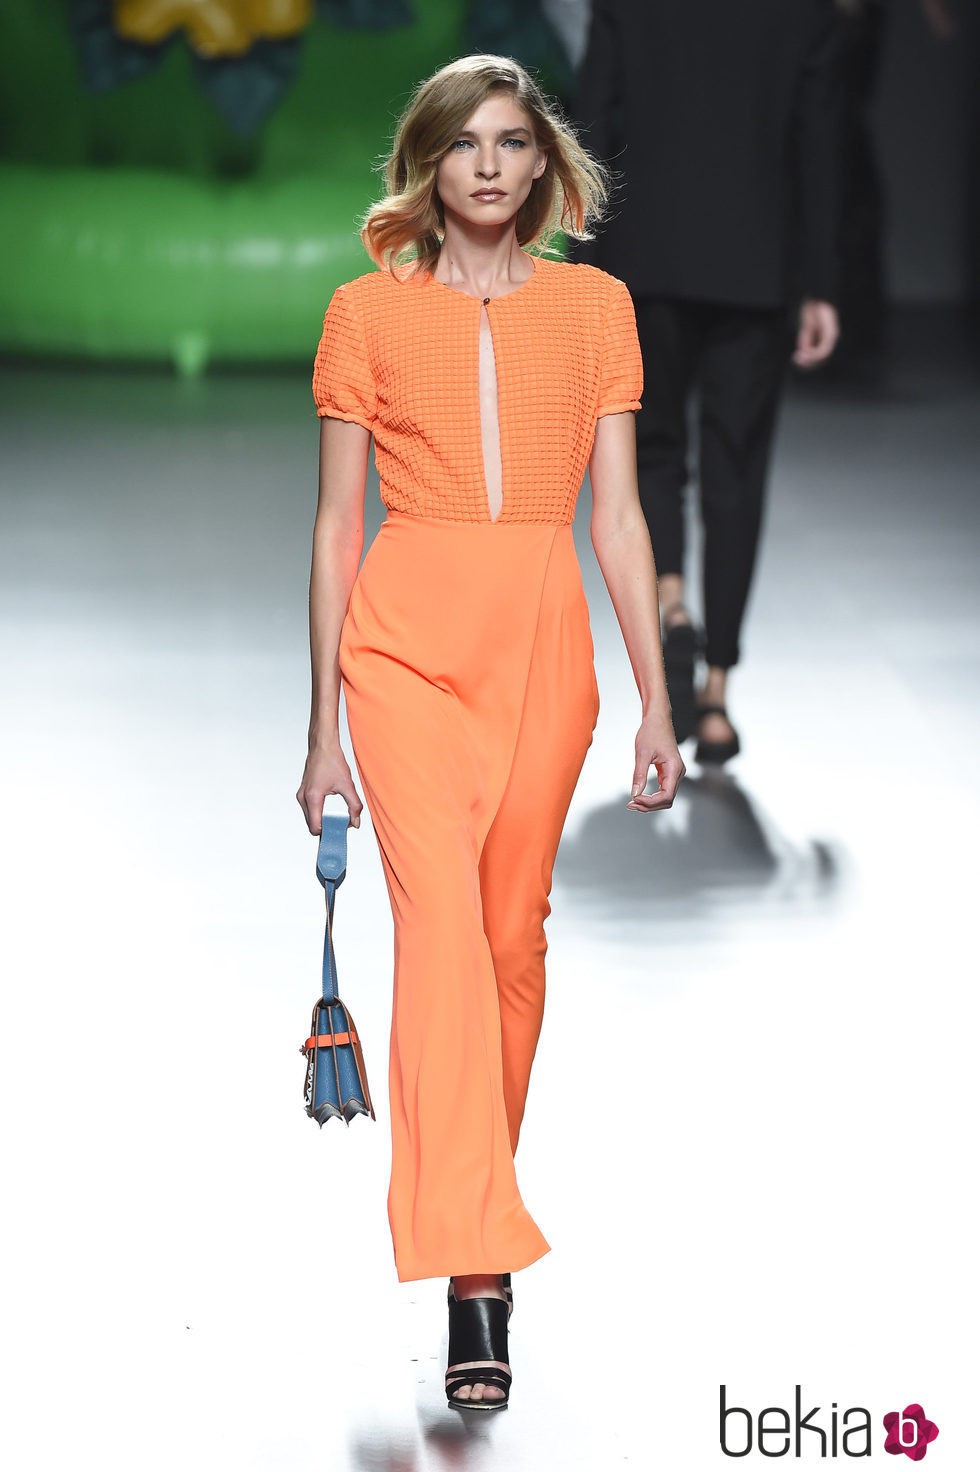 Vestido naranja de la colección primavera/verano 2016 de Ana Locking en Madrid Fashion Week